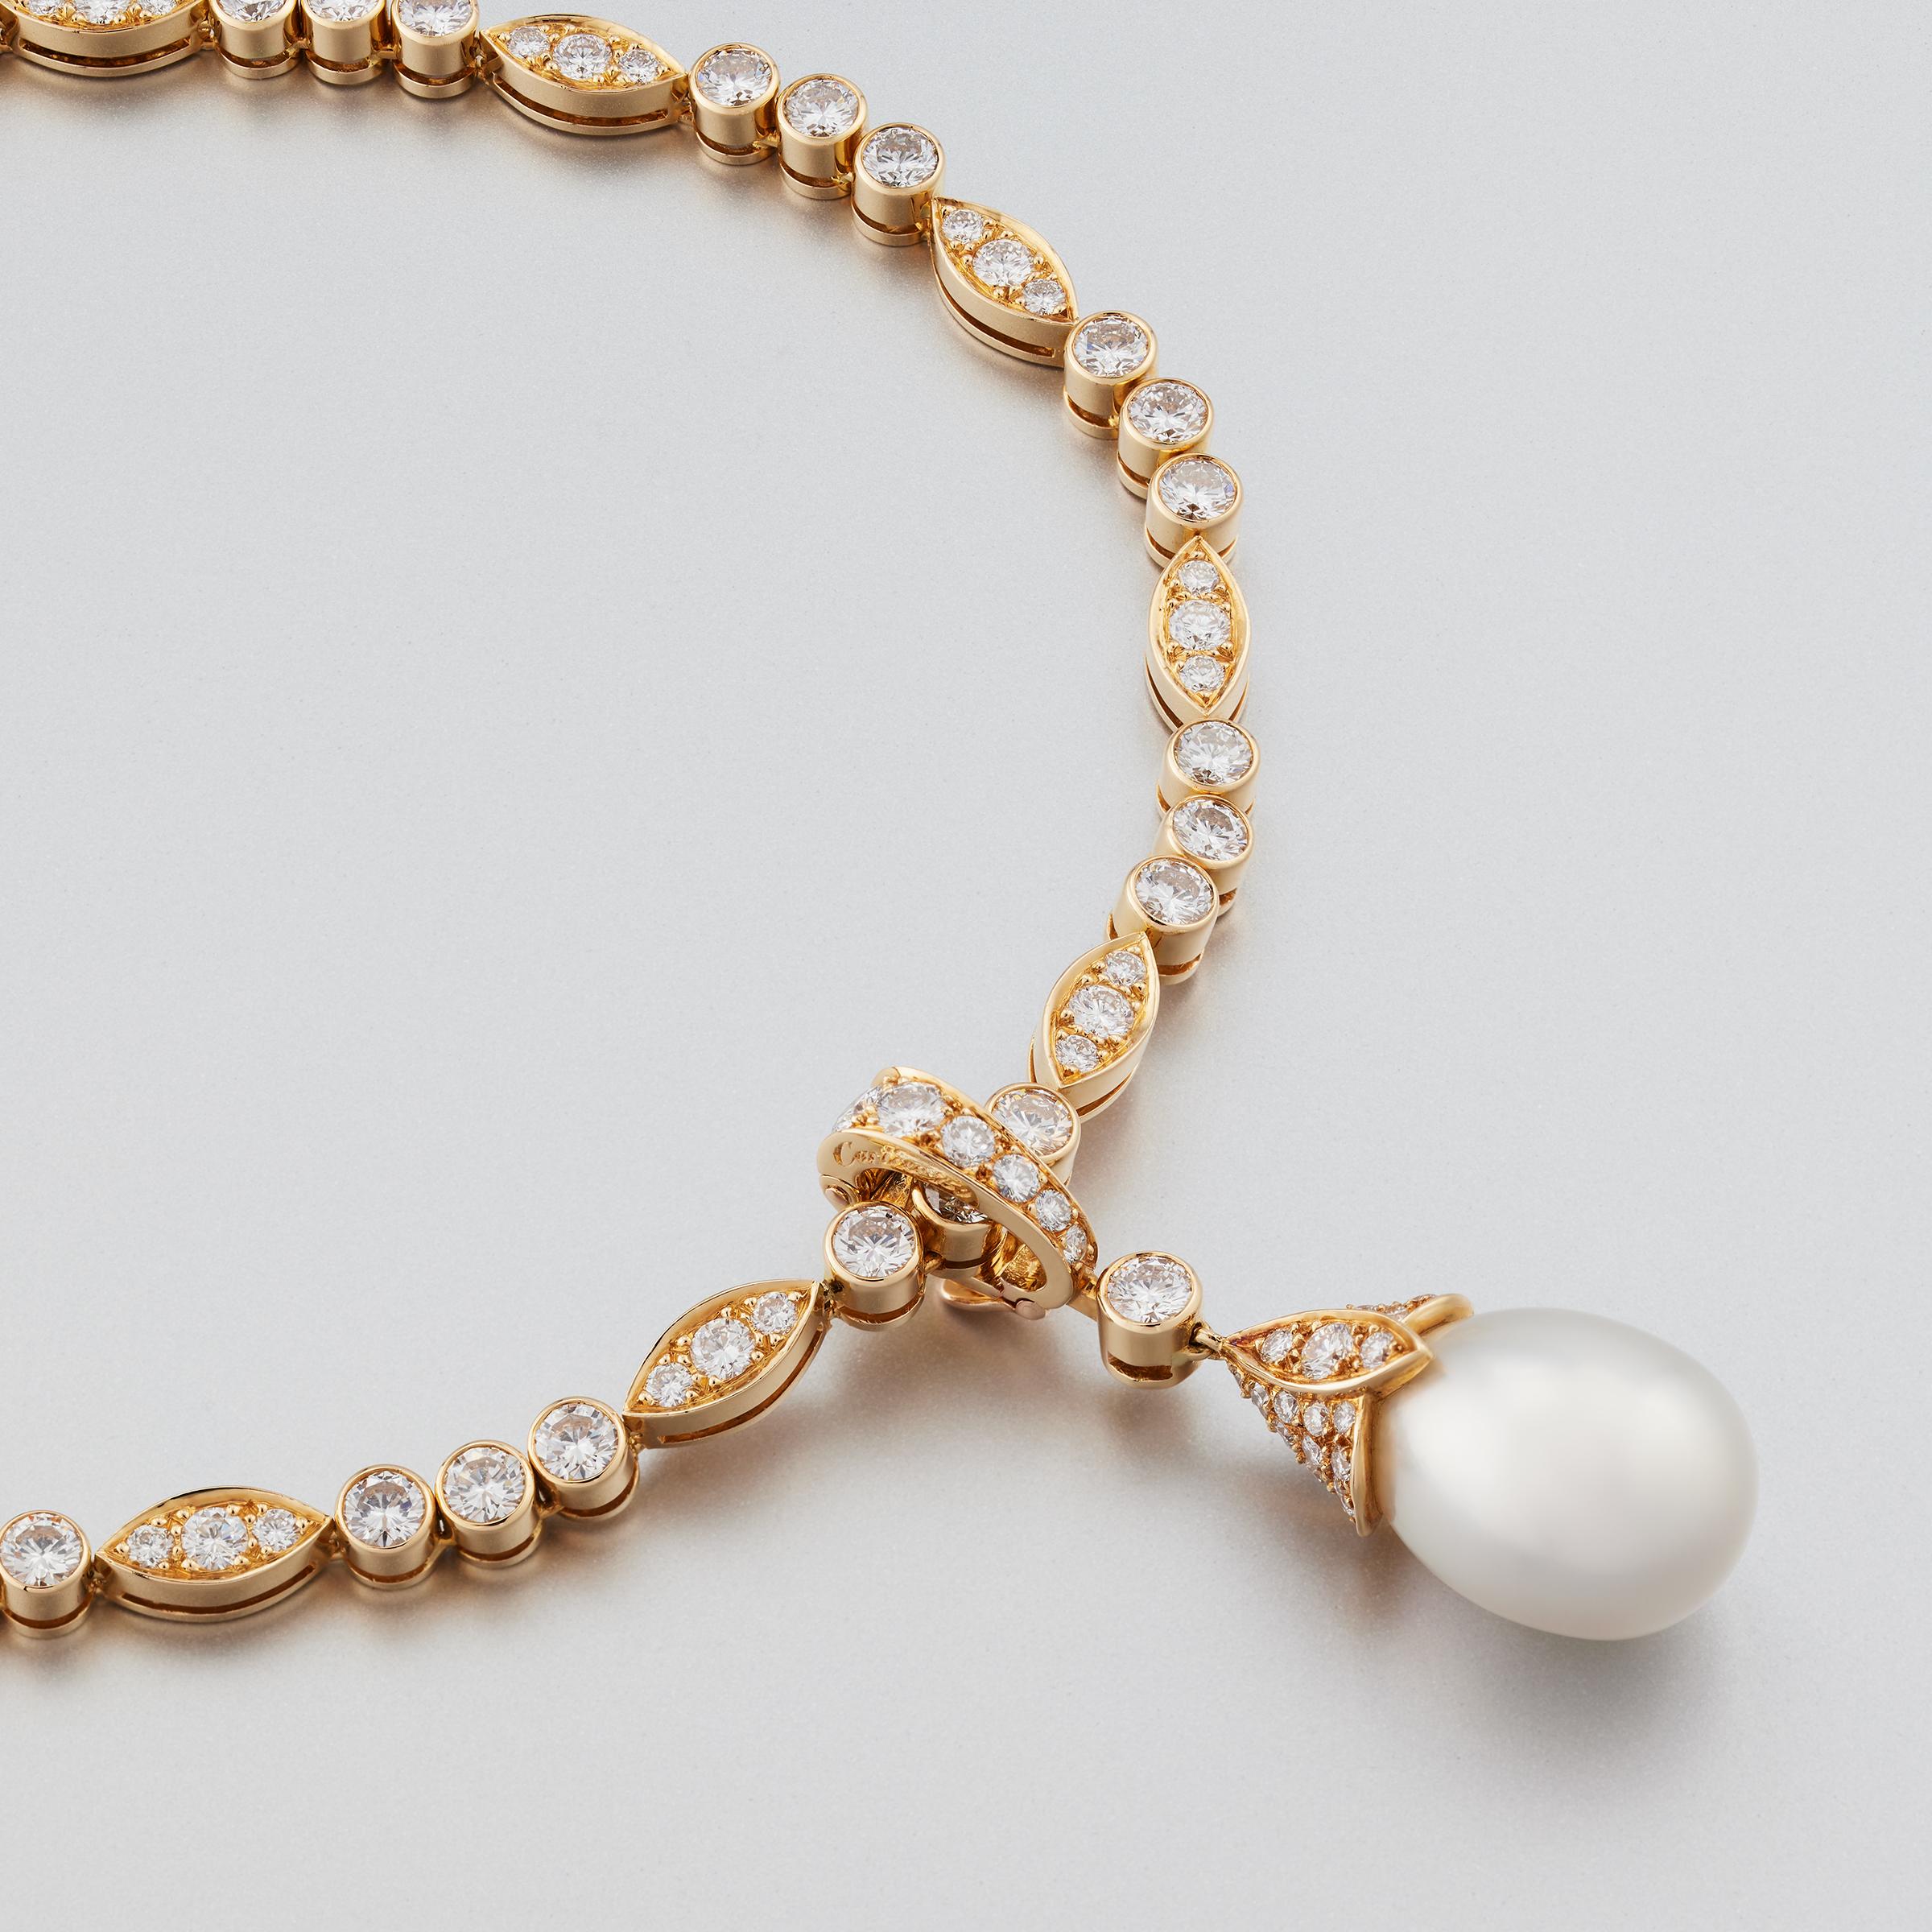 Exceptionnel collier ligne diamant de Cartier Paris comportant une grande goutte de perle détachable et un pendentif en diamant. Le collier et le pendentif sont ornés d'environ 12 carats de diamants de la plus haute qualité (couleur E-F et pureté